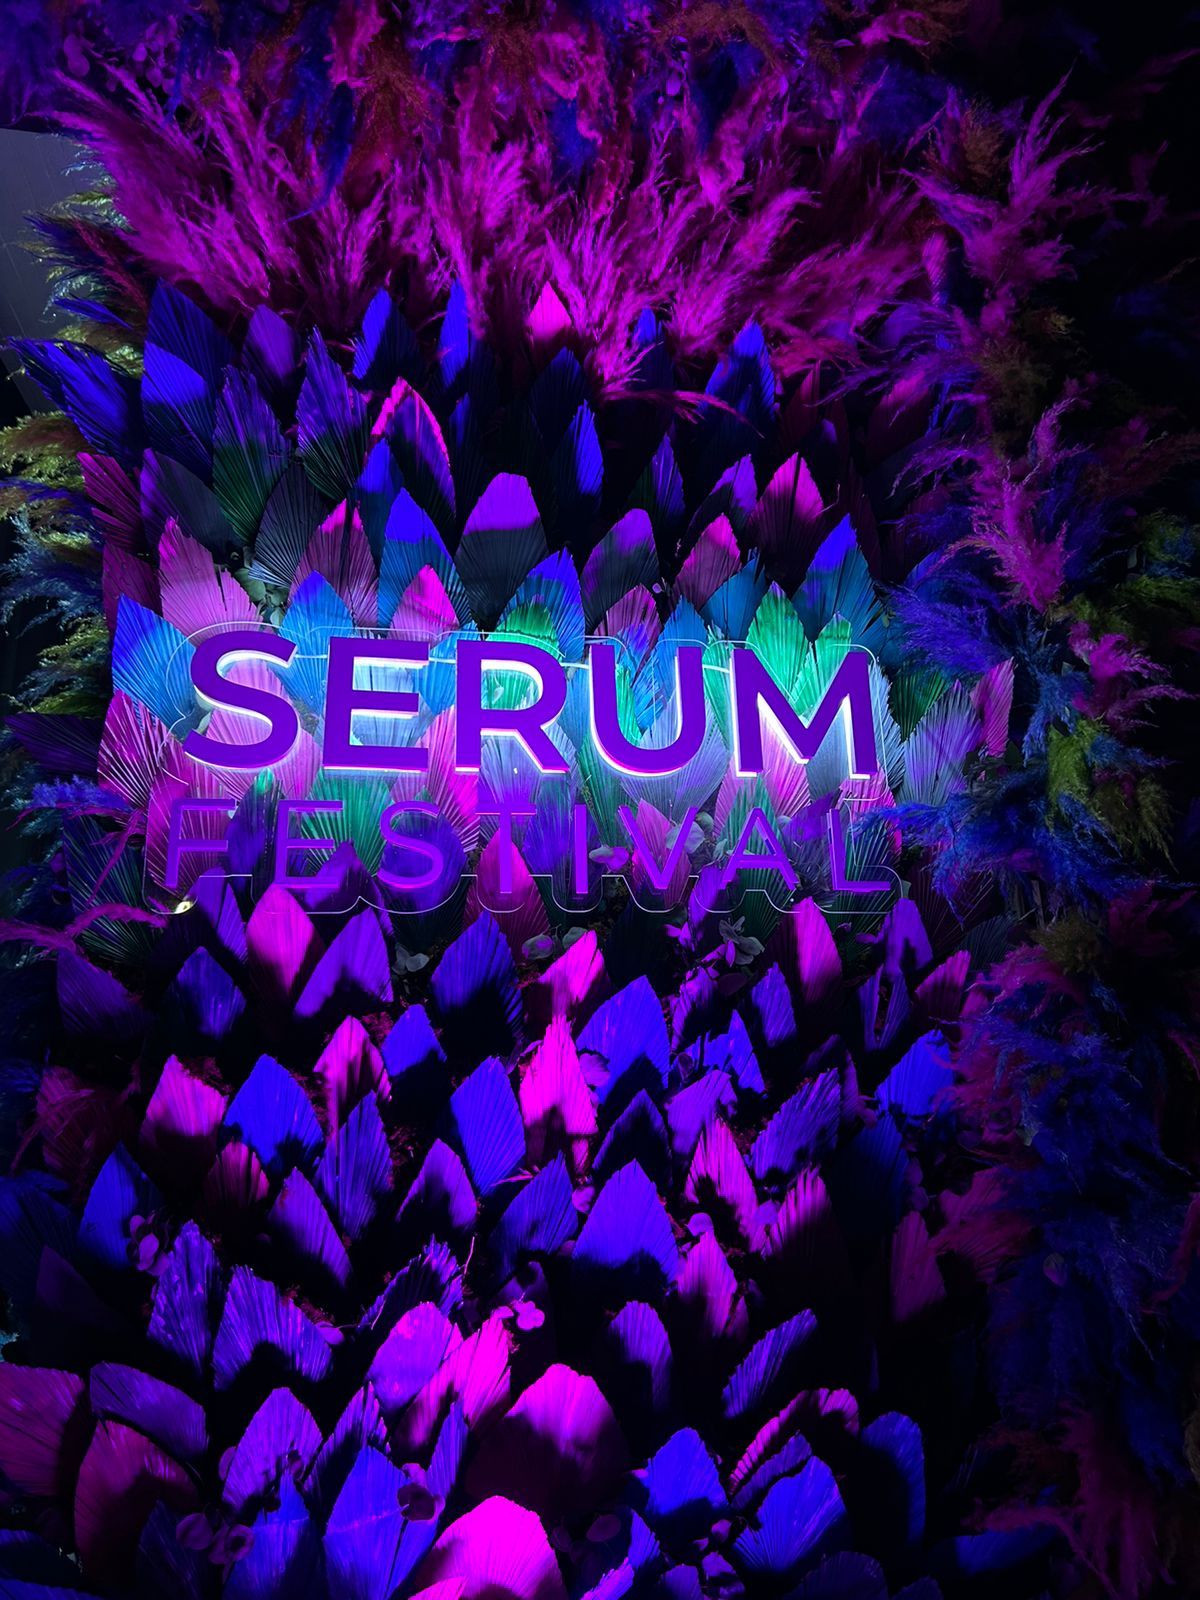 Bioderma llevó a cabo Serum Festival: una experiencia enfocada en el cuidado de la piel